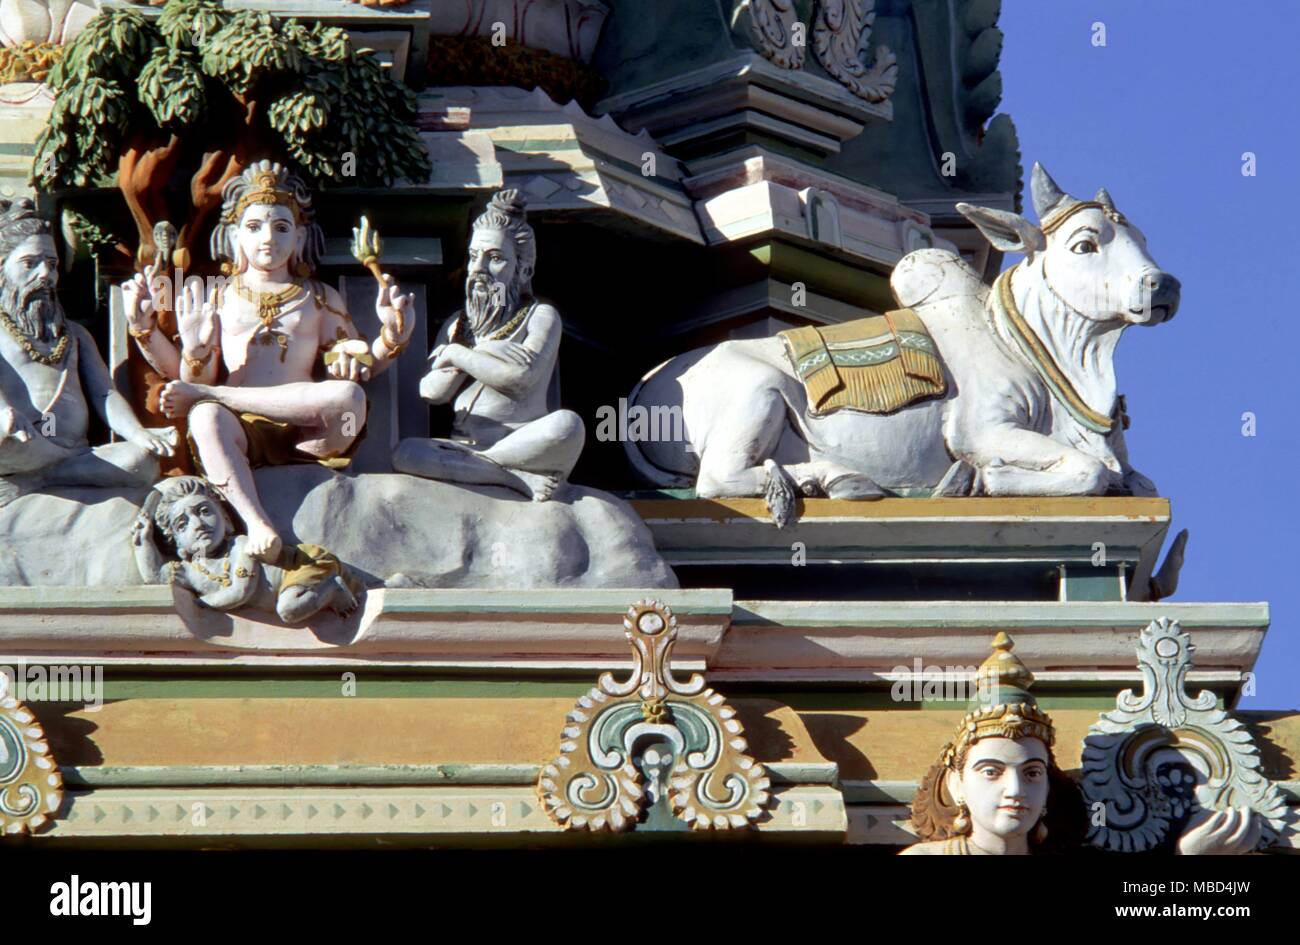 Hinduismus - der hinduistischen Mythologie - Madras - Details der hinduistischen mythologischen Figuren an der Fassade der Kaapaleeshwara Tempel, in Madras, Indien. - ©/CW Stockfoto